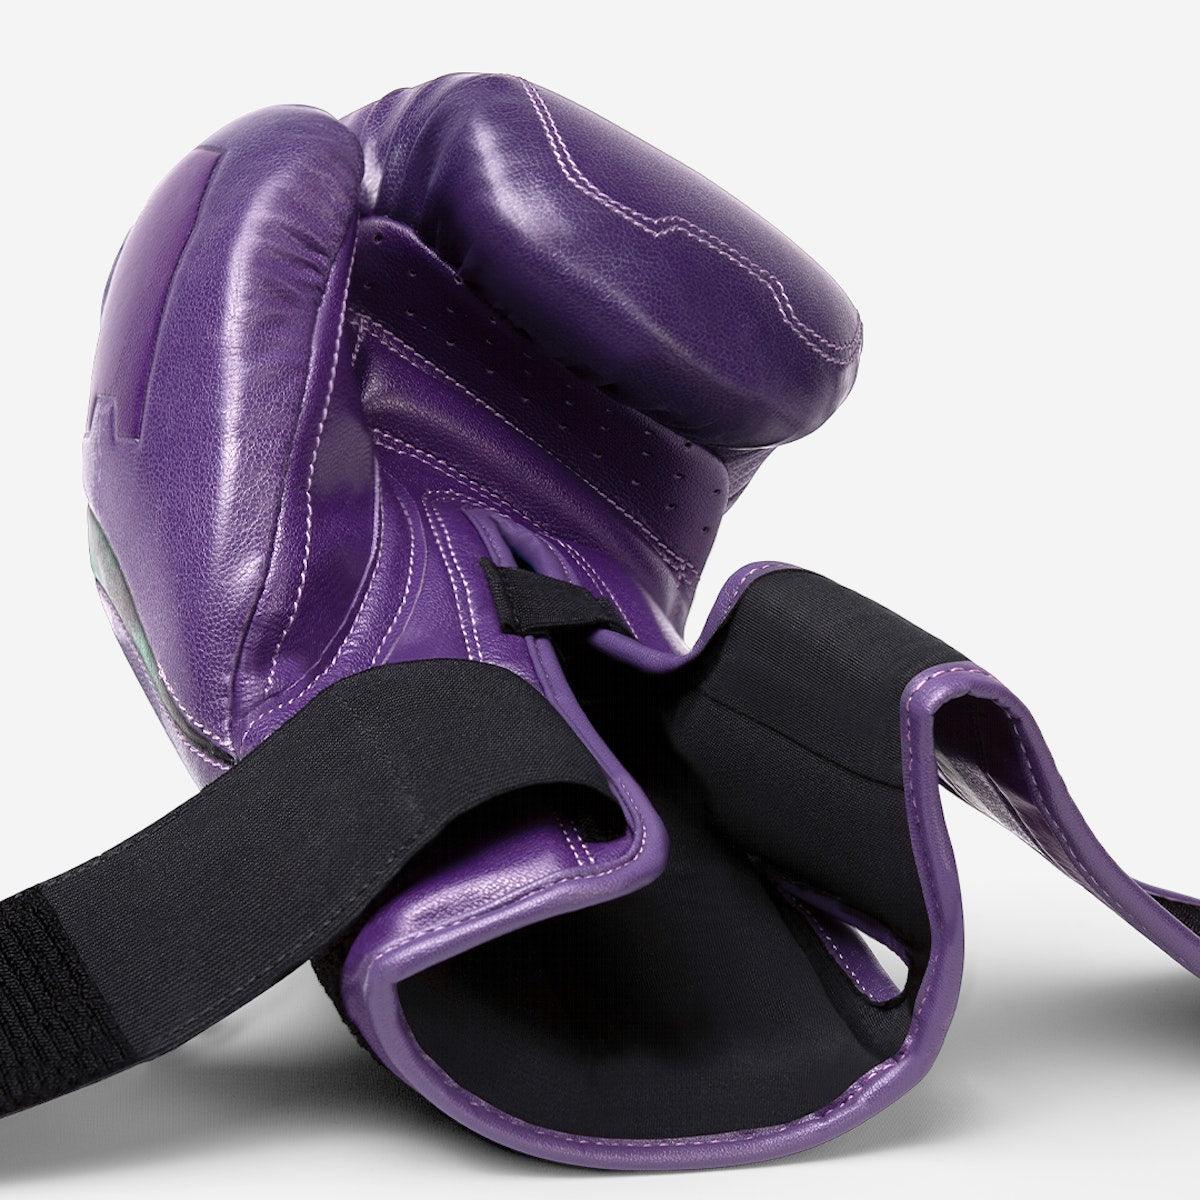 Marvel's Hulk Boxing Gloves - Violent Art Shop